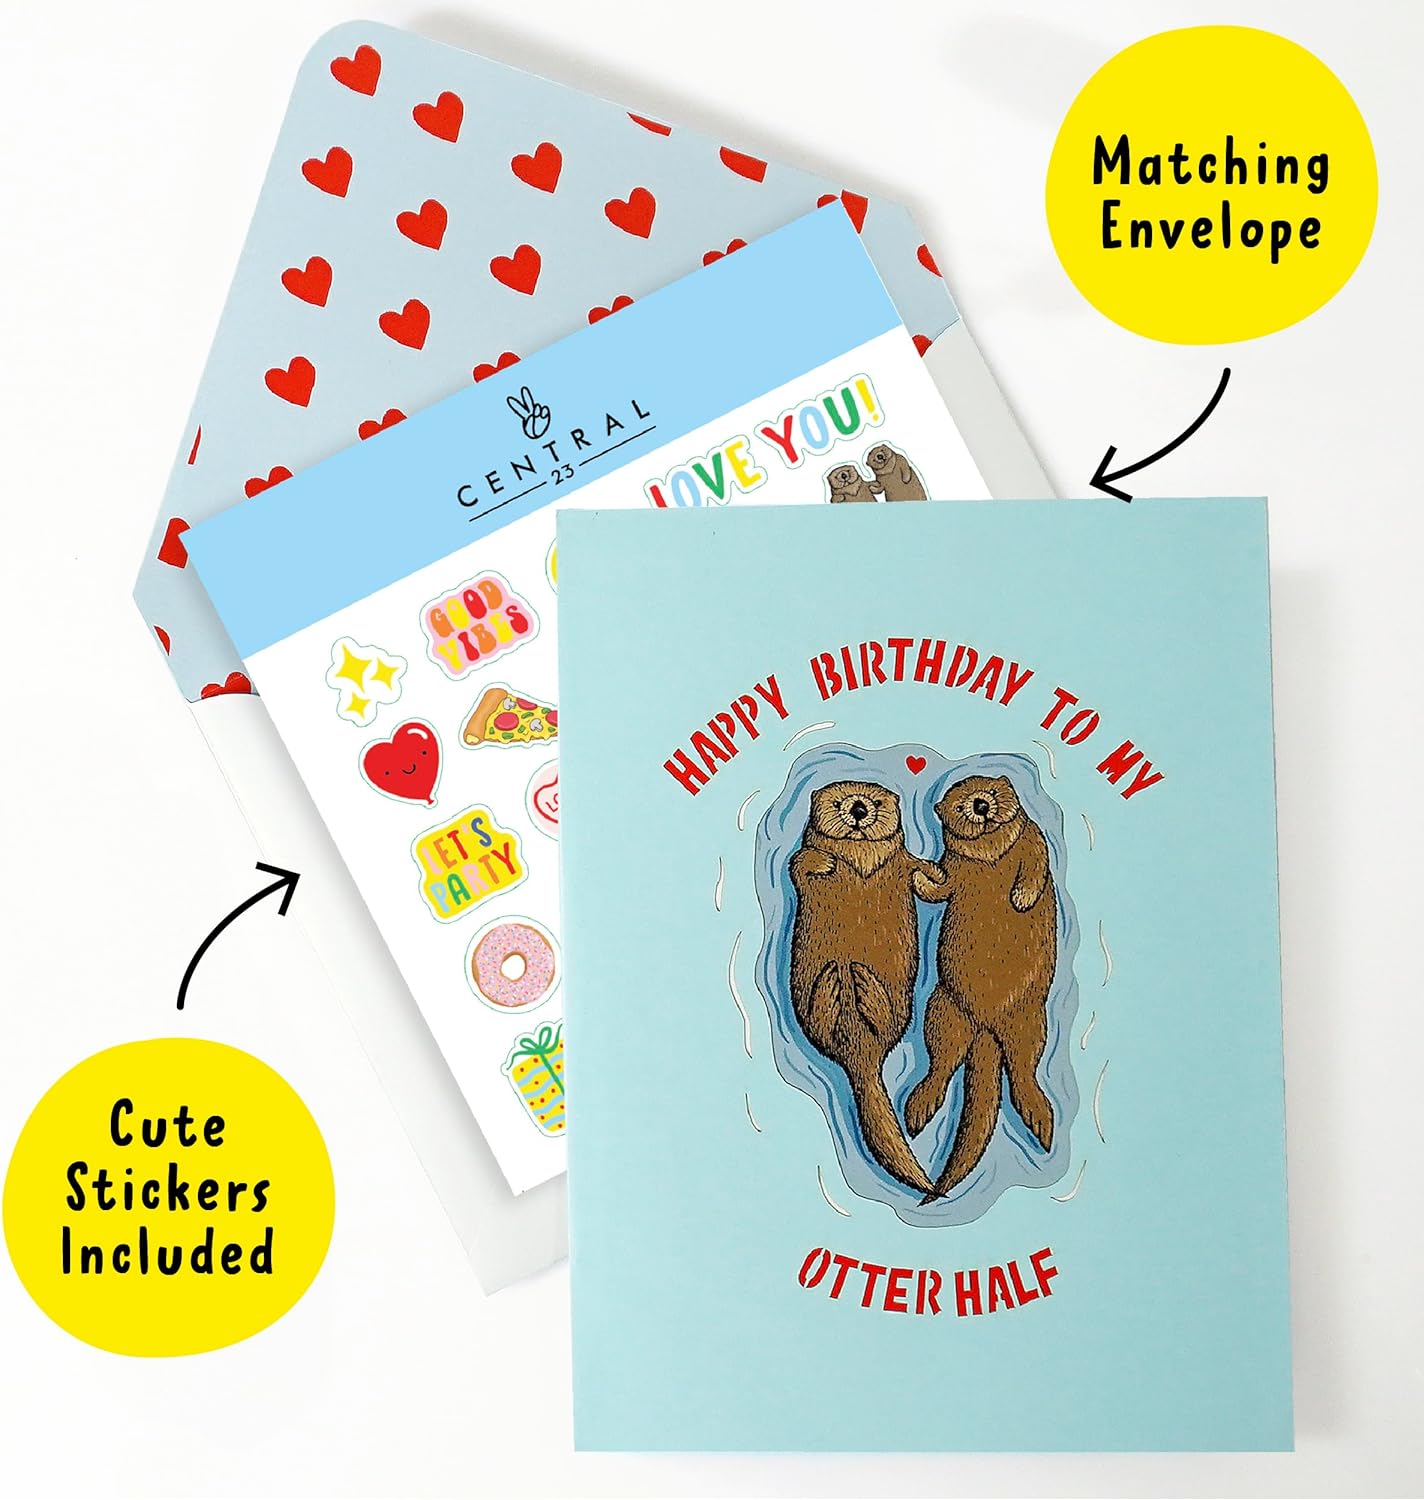 Otter Pop Up Card - My Otter Half - For Men Women Boys Girls Him Her